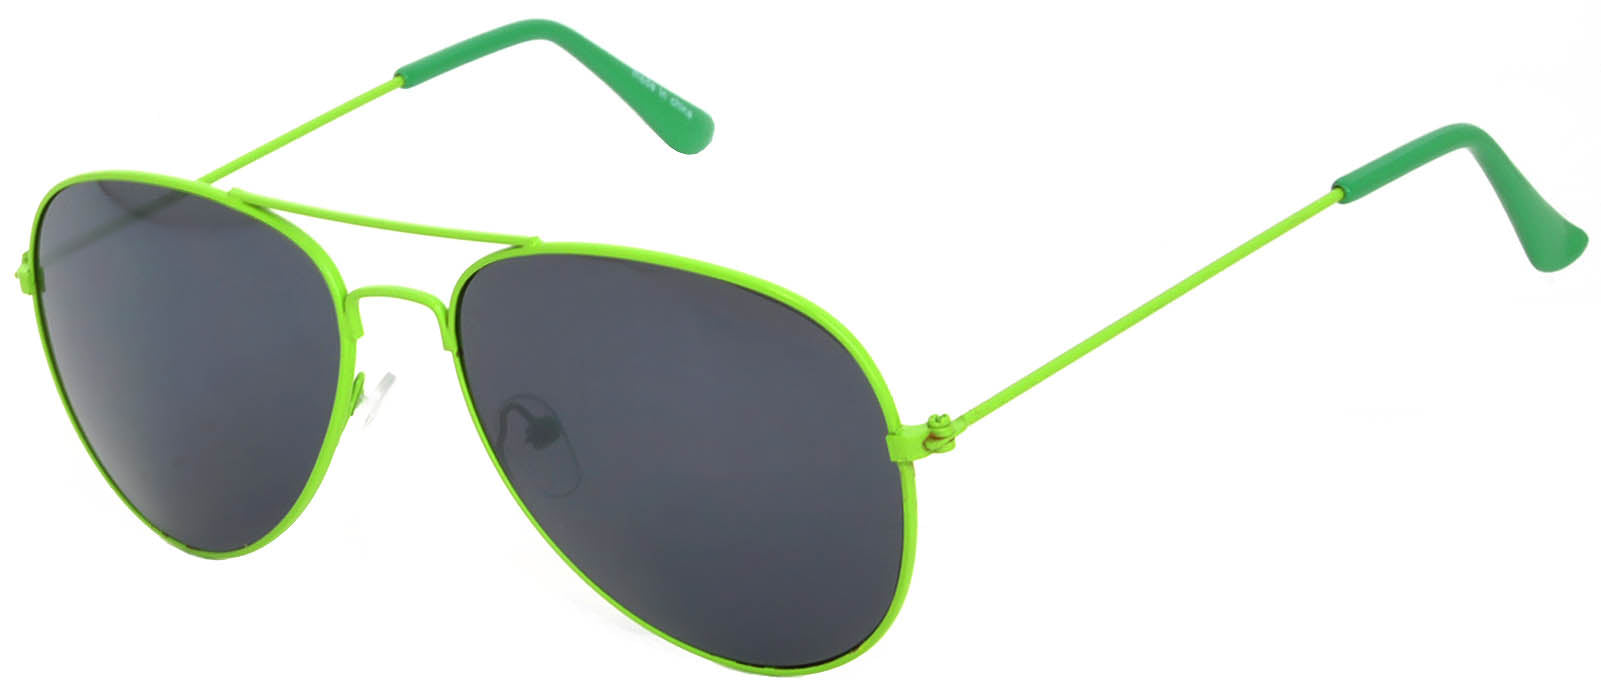 Aviator Sunglasses - Green Frame / Smoke Lens